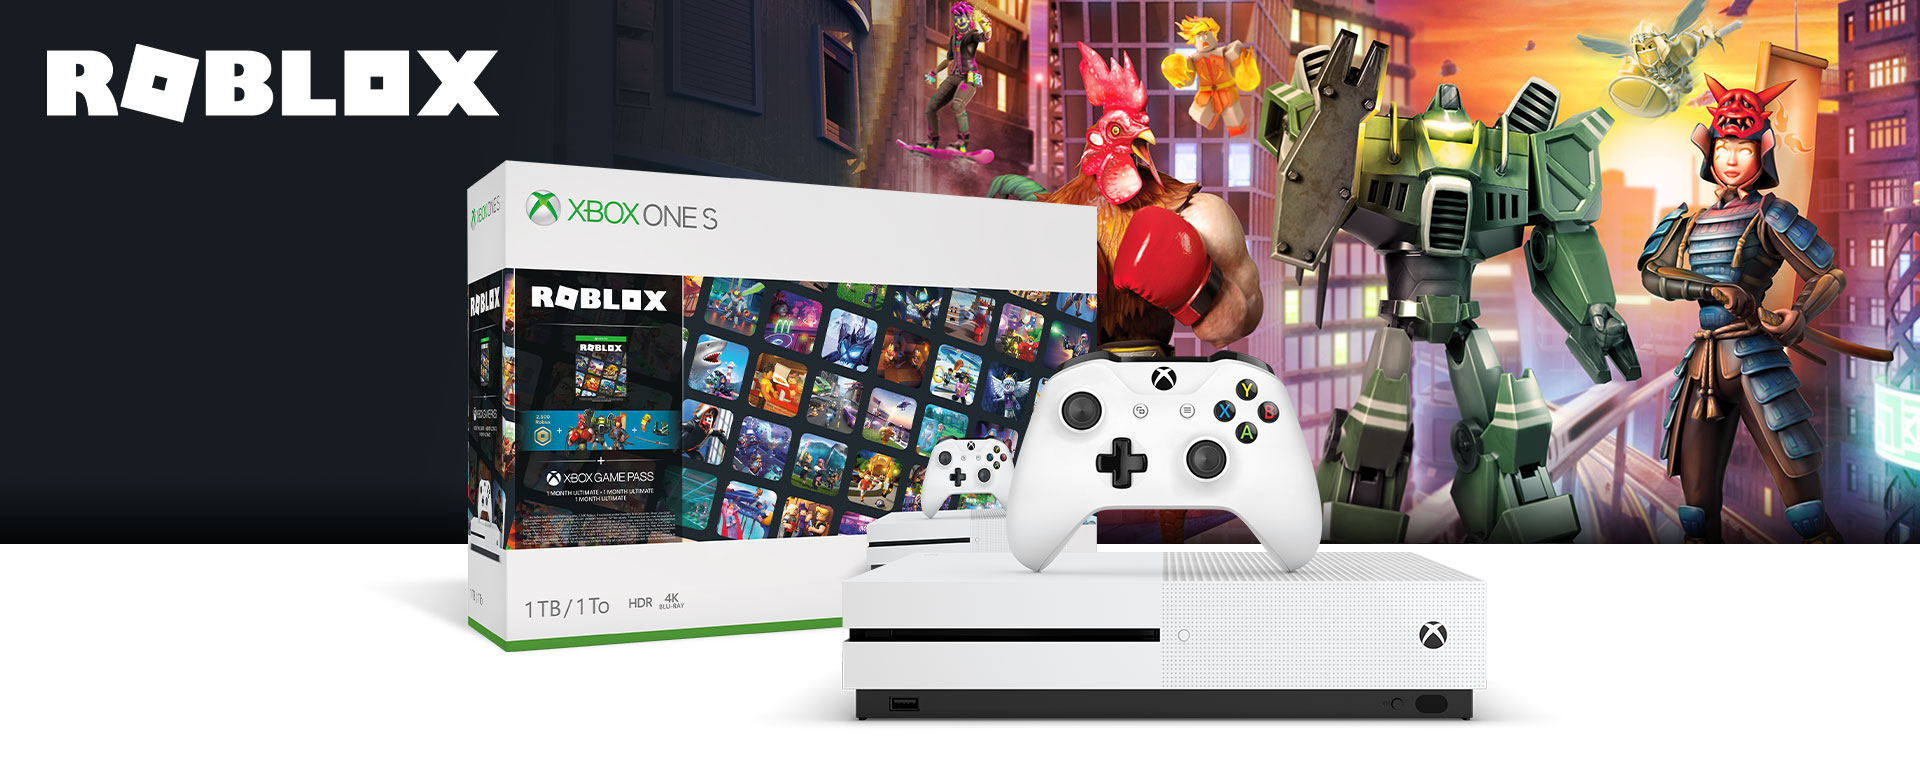 Xbox One S Roblox Bundle 1 Tb Xbox